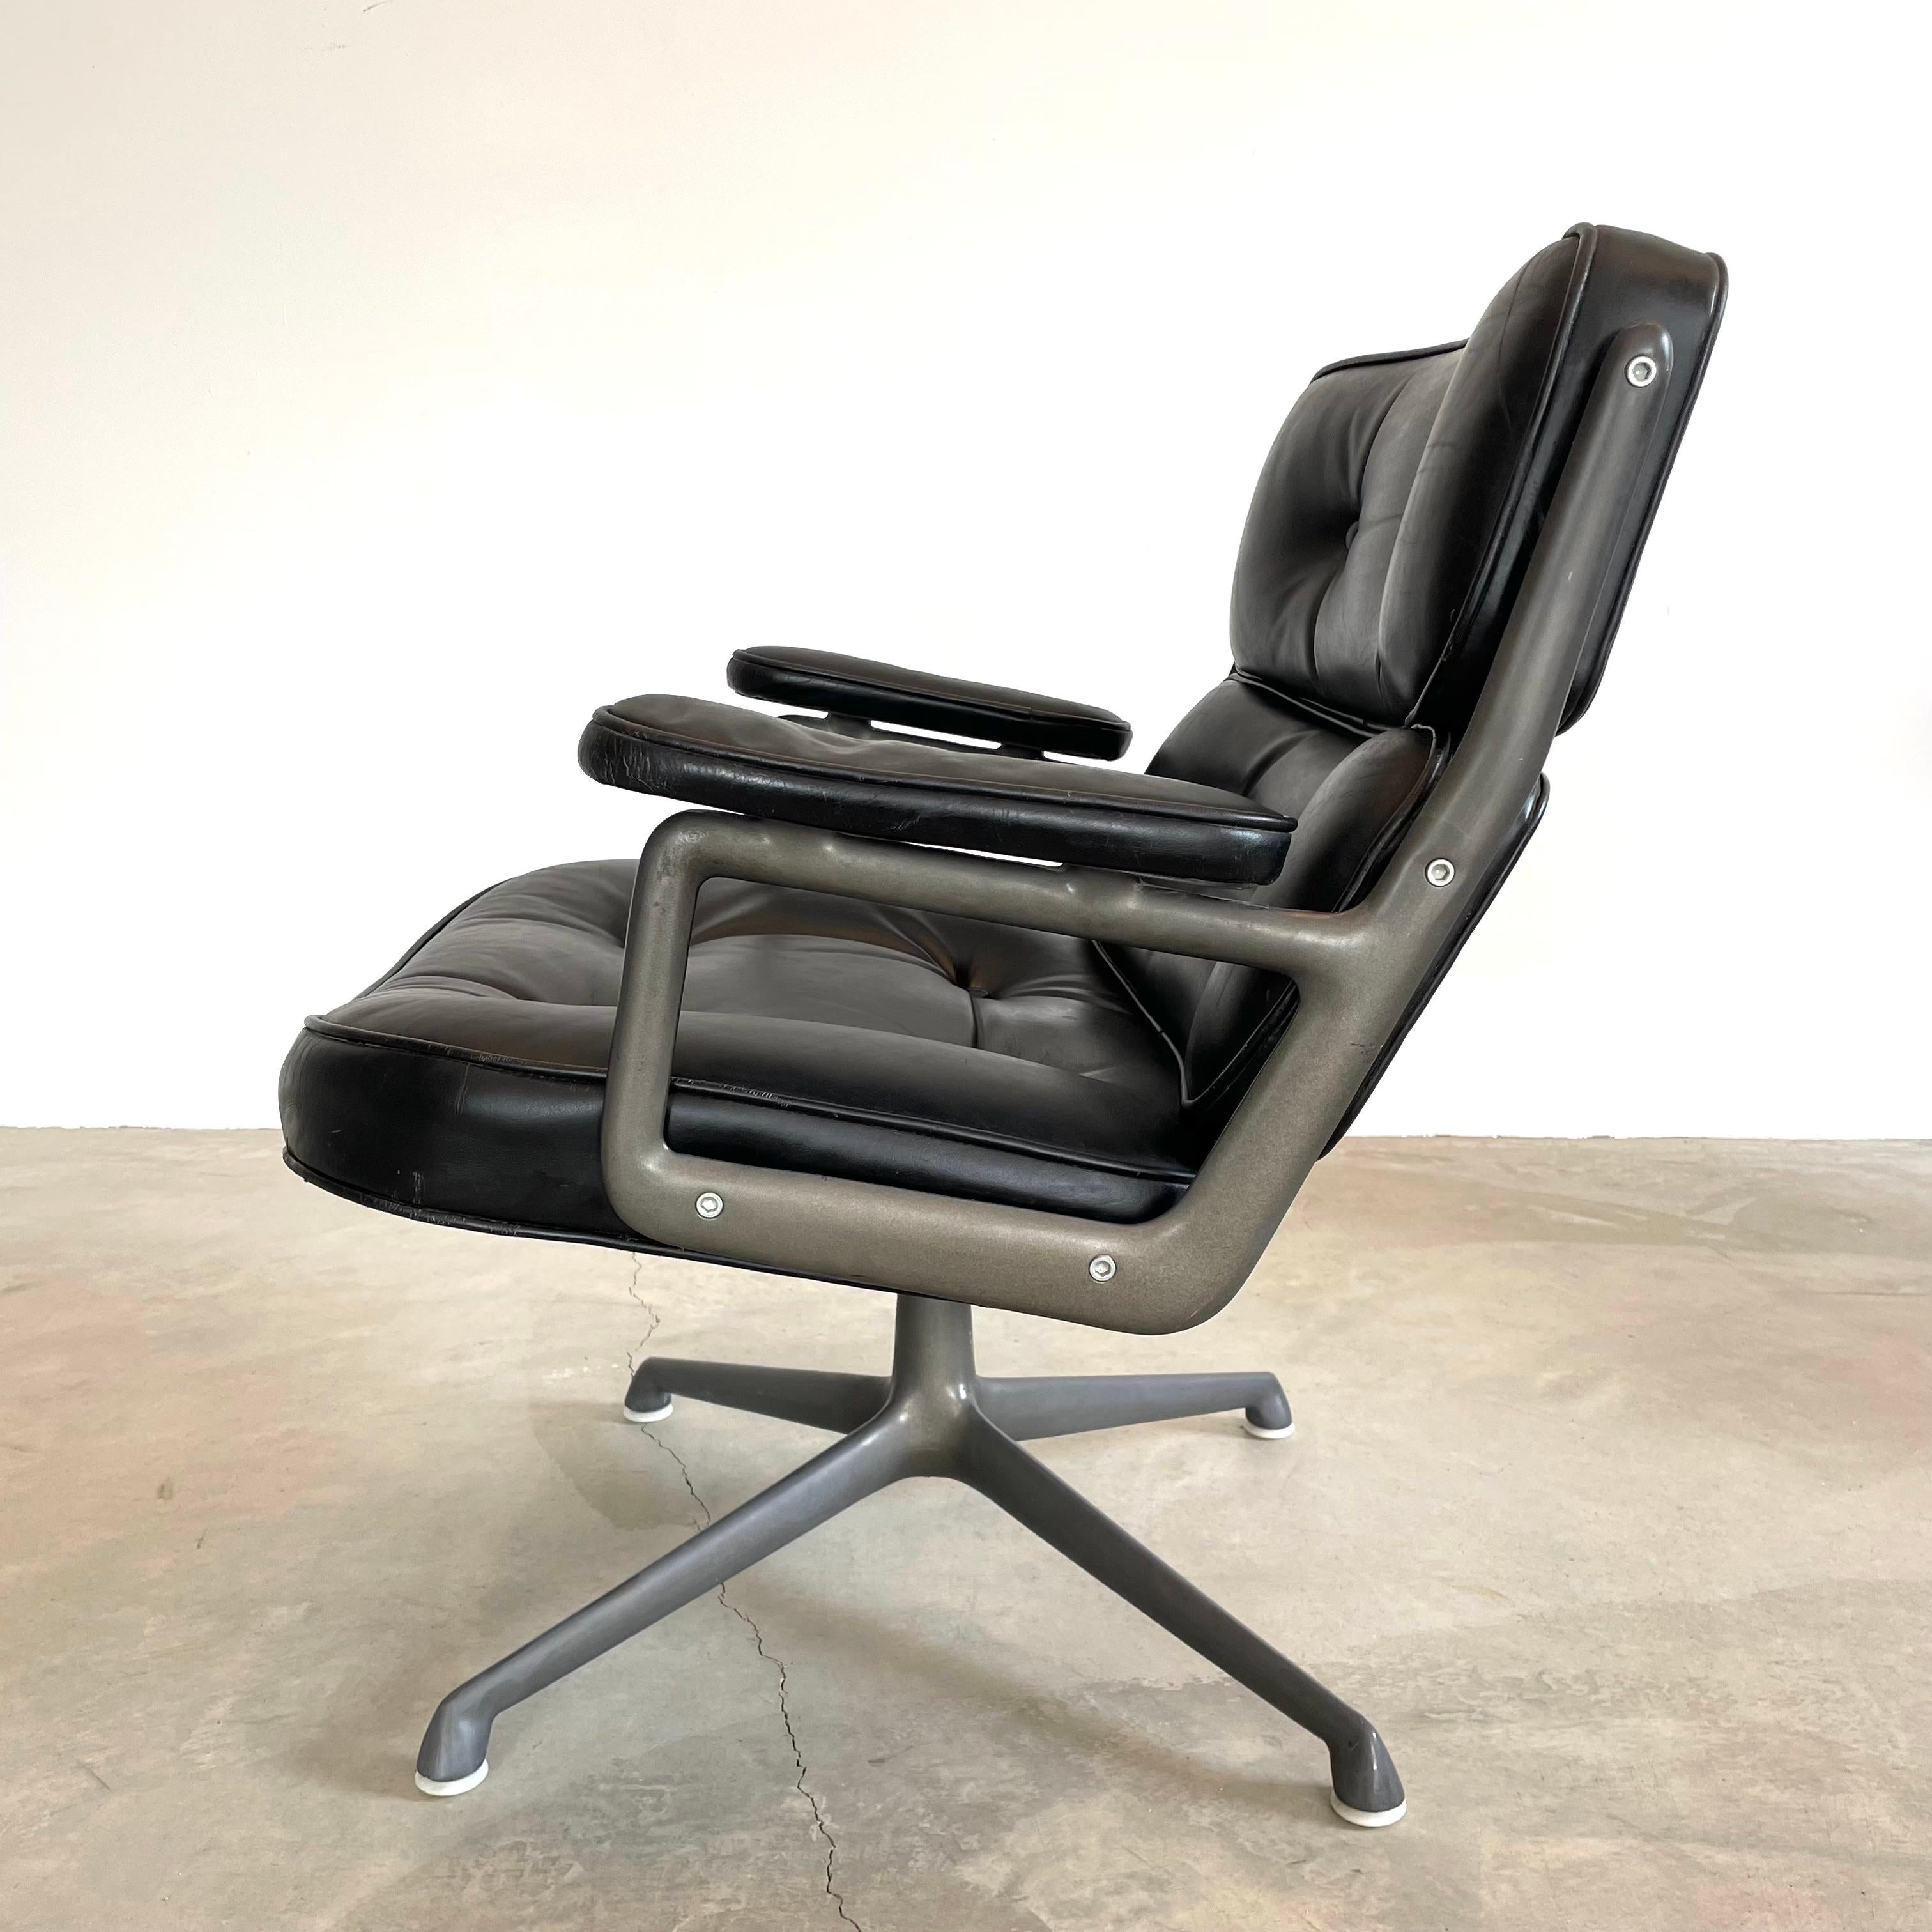 Klassischer Eames Time Life Lobby Chair in schwarzem Leder für Herman Miller. Schwarzes Leder ist in gutem Zustand mit Verschleiß wie gezeigt. Äußerst bequem und eingearbeitet. Der Stuhl ist drehbar. Die Höhe ist einstellbar. Fantastische Patina auf